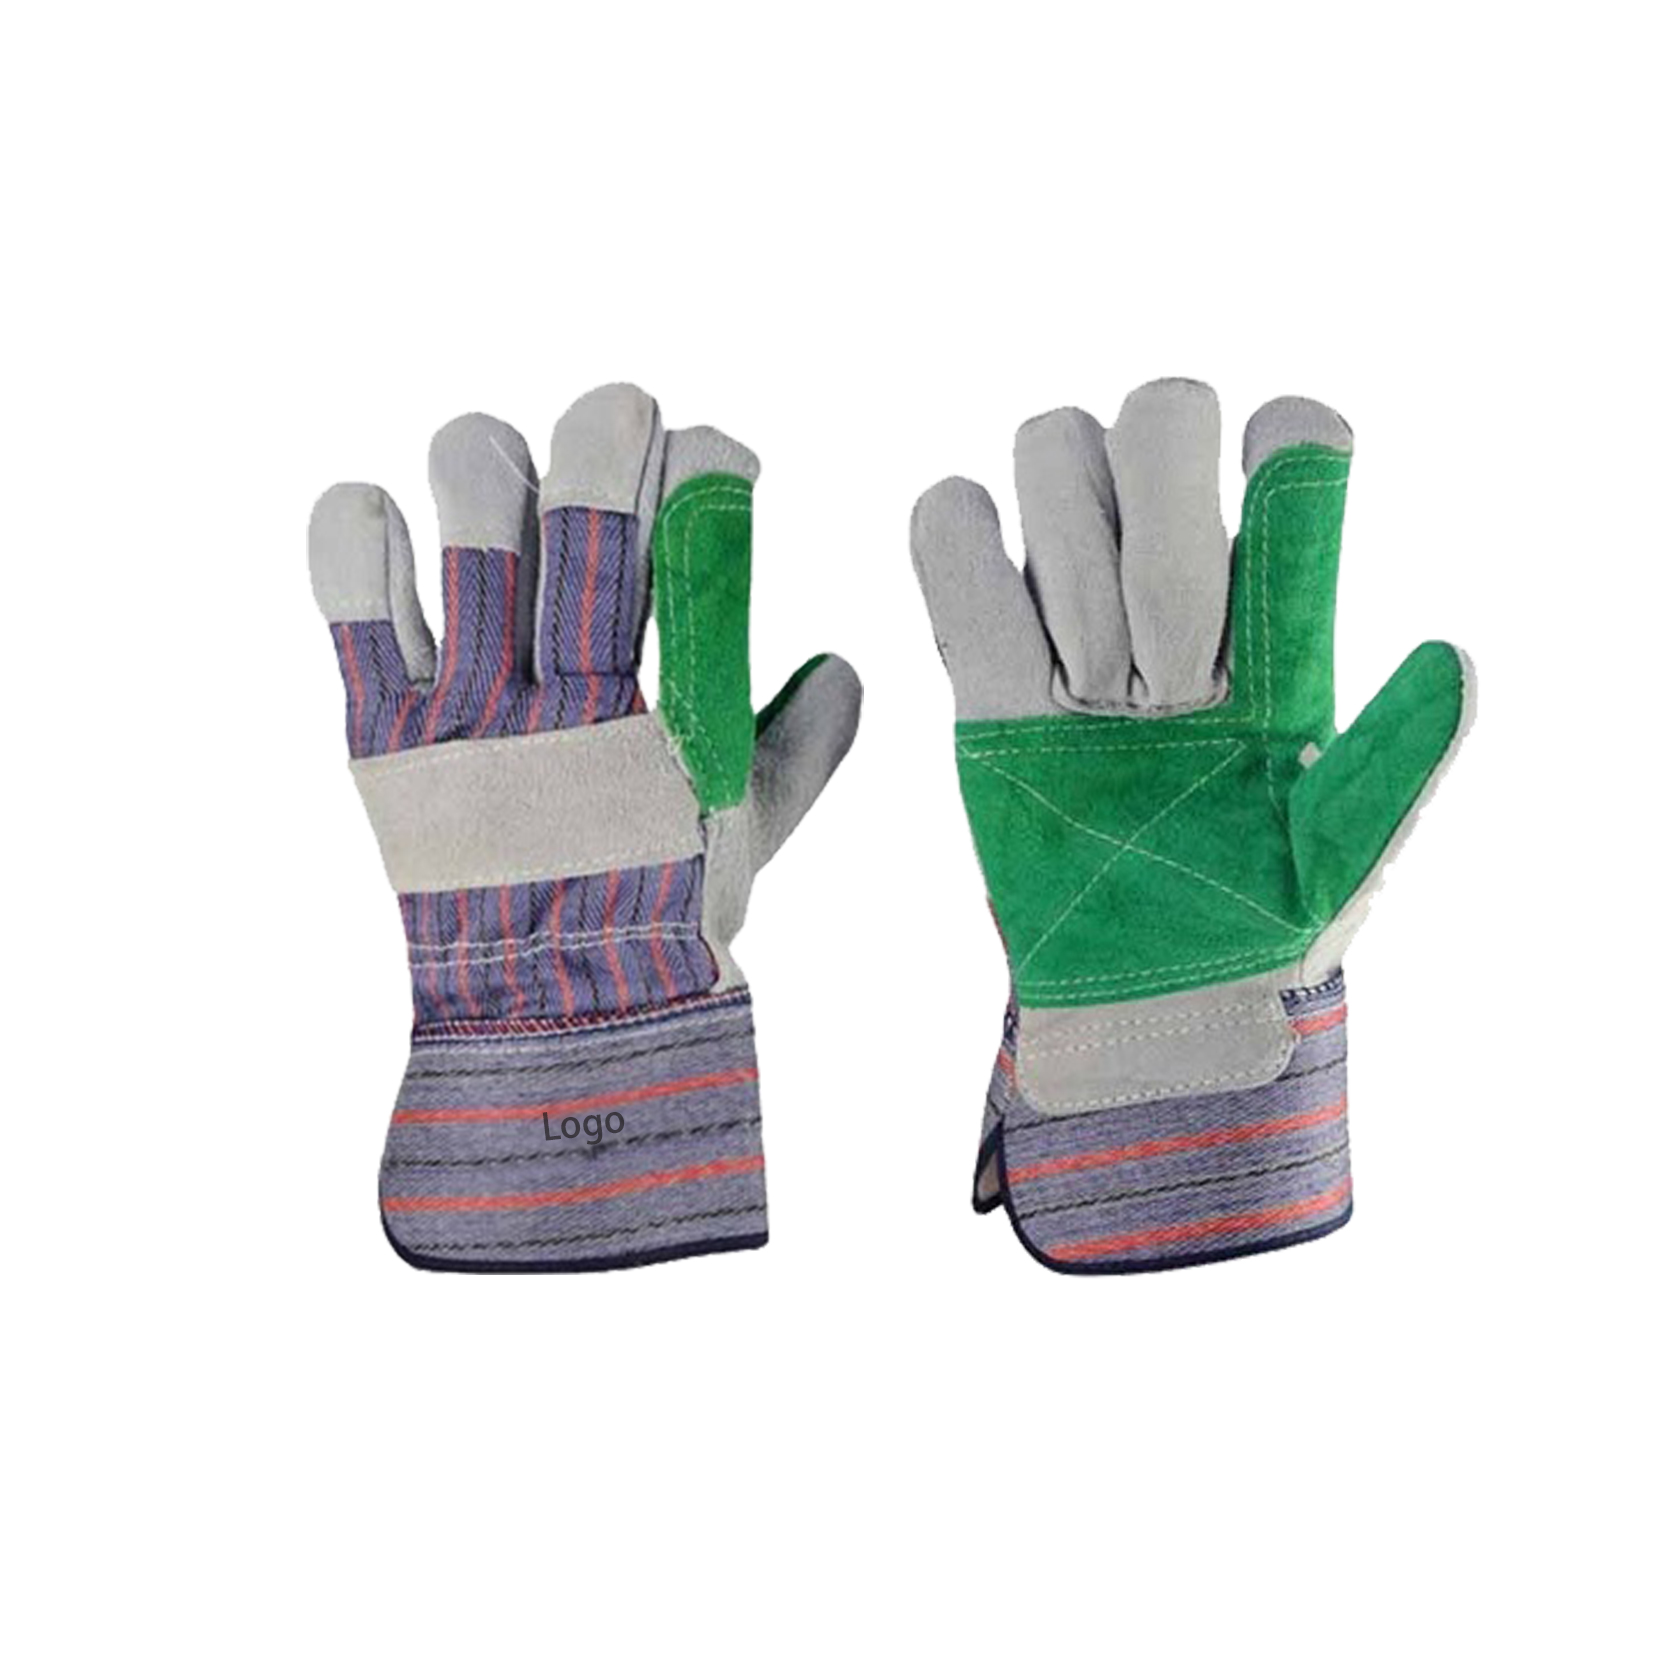 Sicherheits-Leder-Arbeitshandschuhe Herren, Gartenhandschuhe, Rigger-Handschuhe, Bauarbeiter-Handschuhe